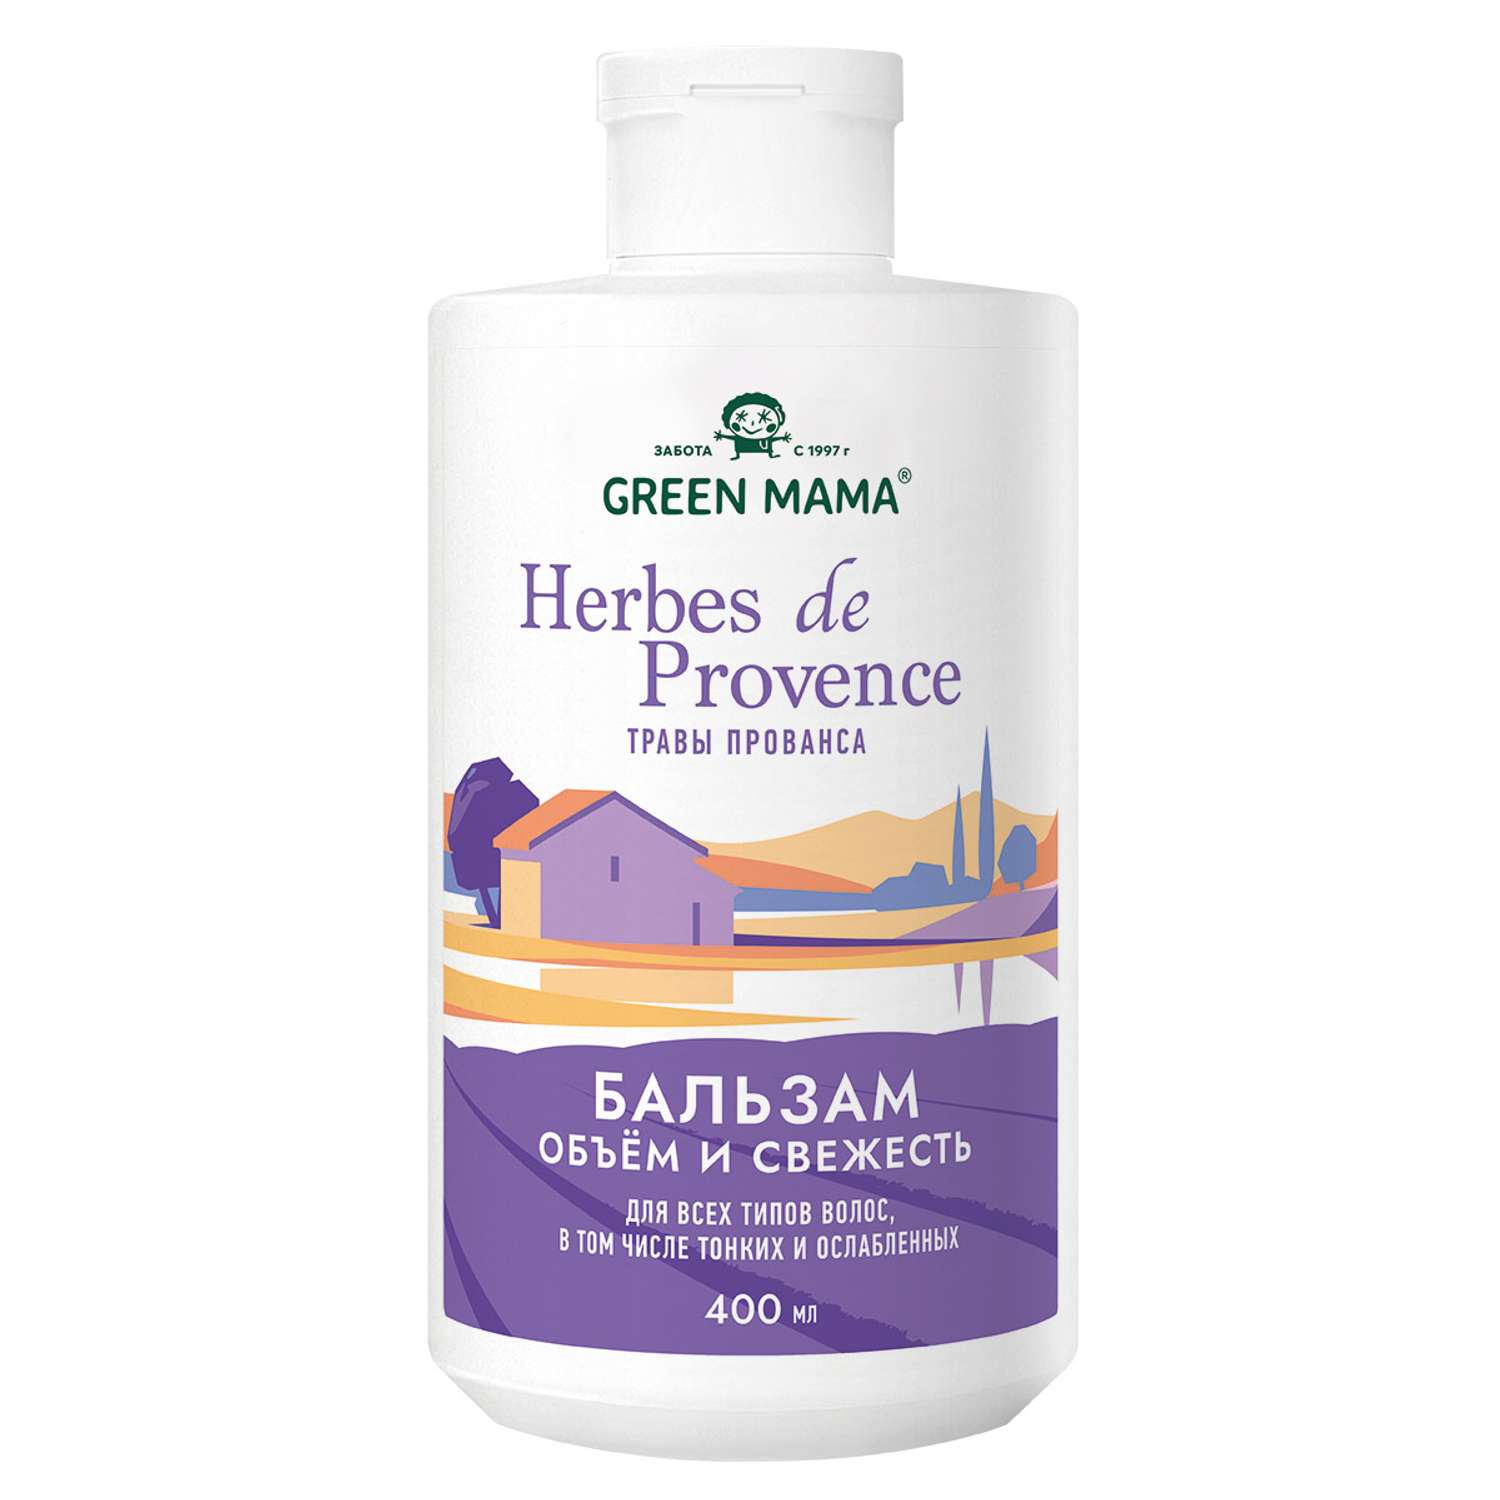 Бальзам Green Mama HERBES DE РROVENCE для объема волос с травами прованса 400 мл - фото 1